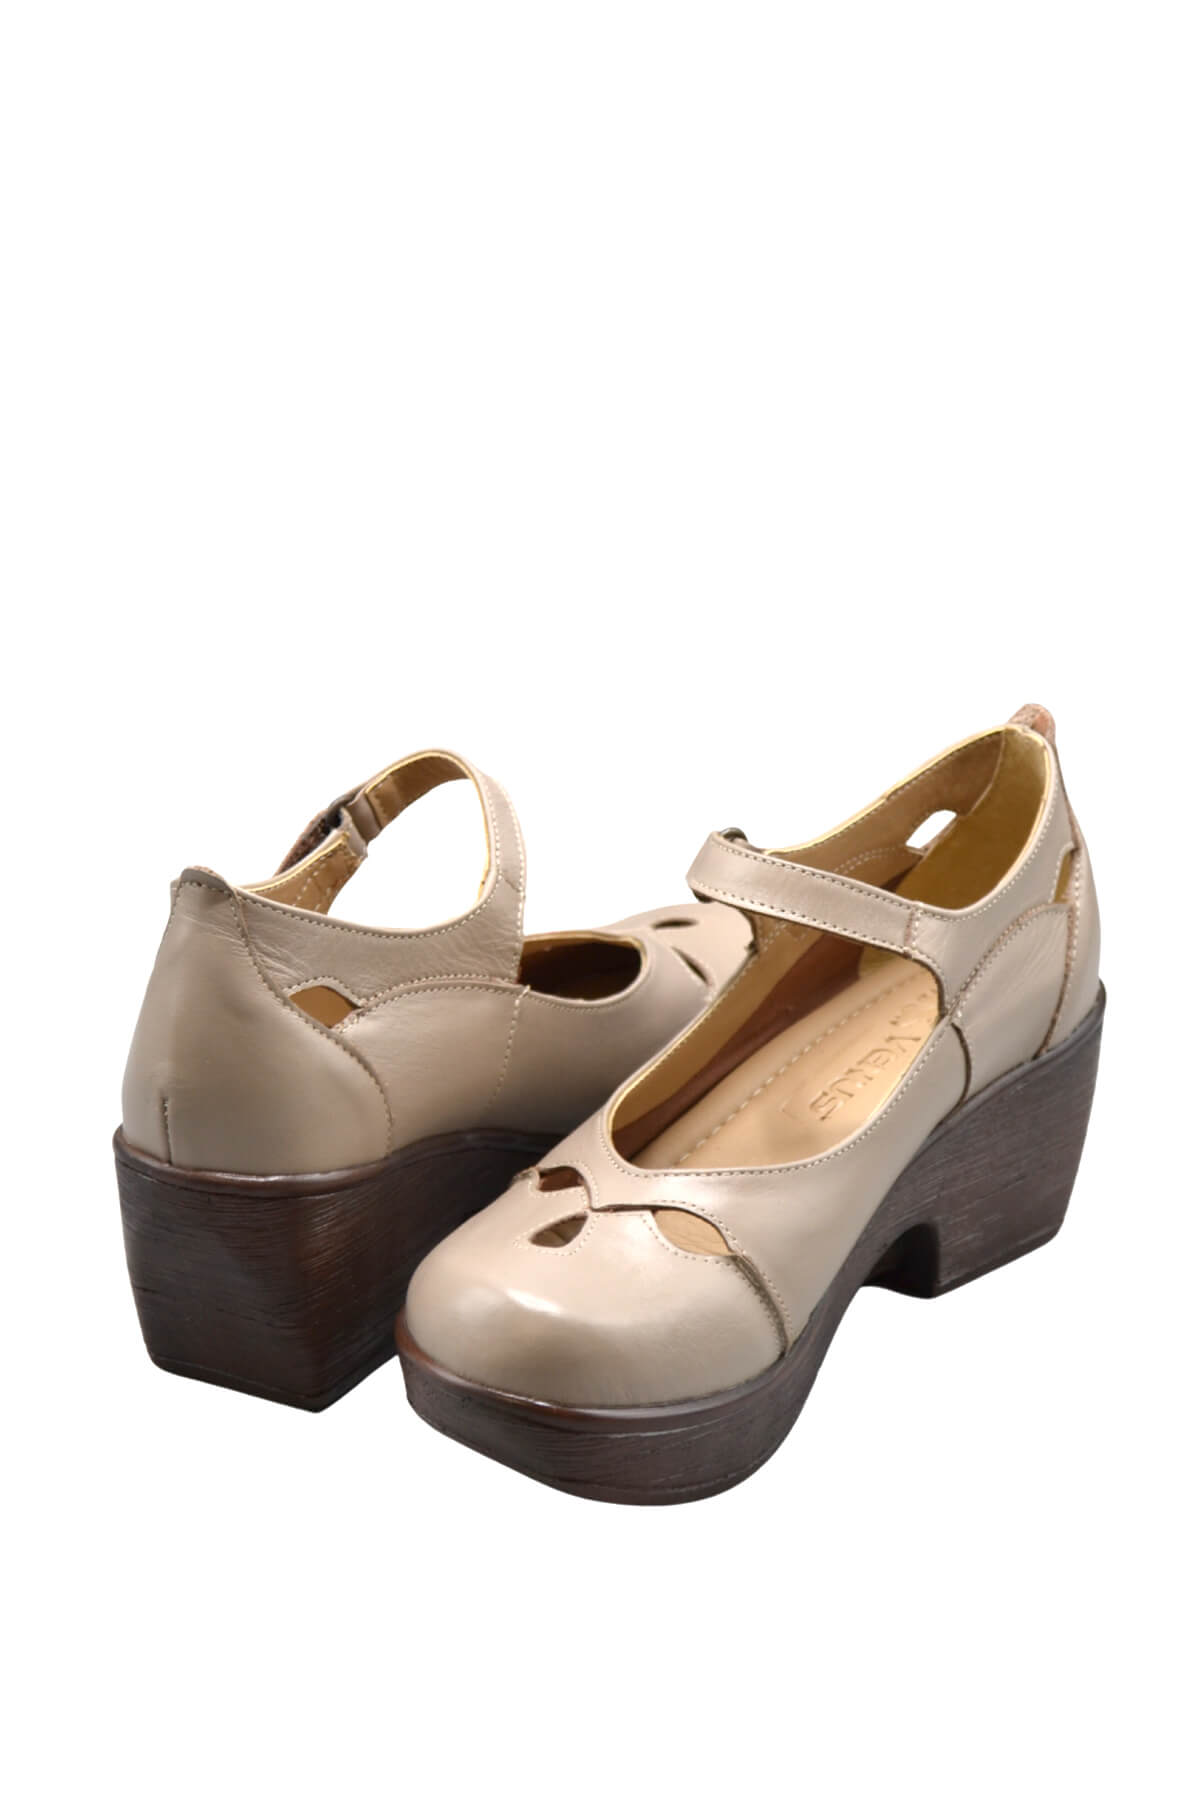 Kadın Apartman Topuk Deri Ayakkabı Taş 1912501